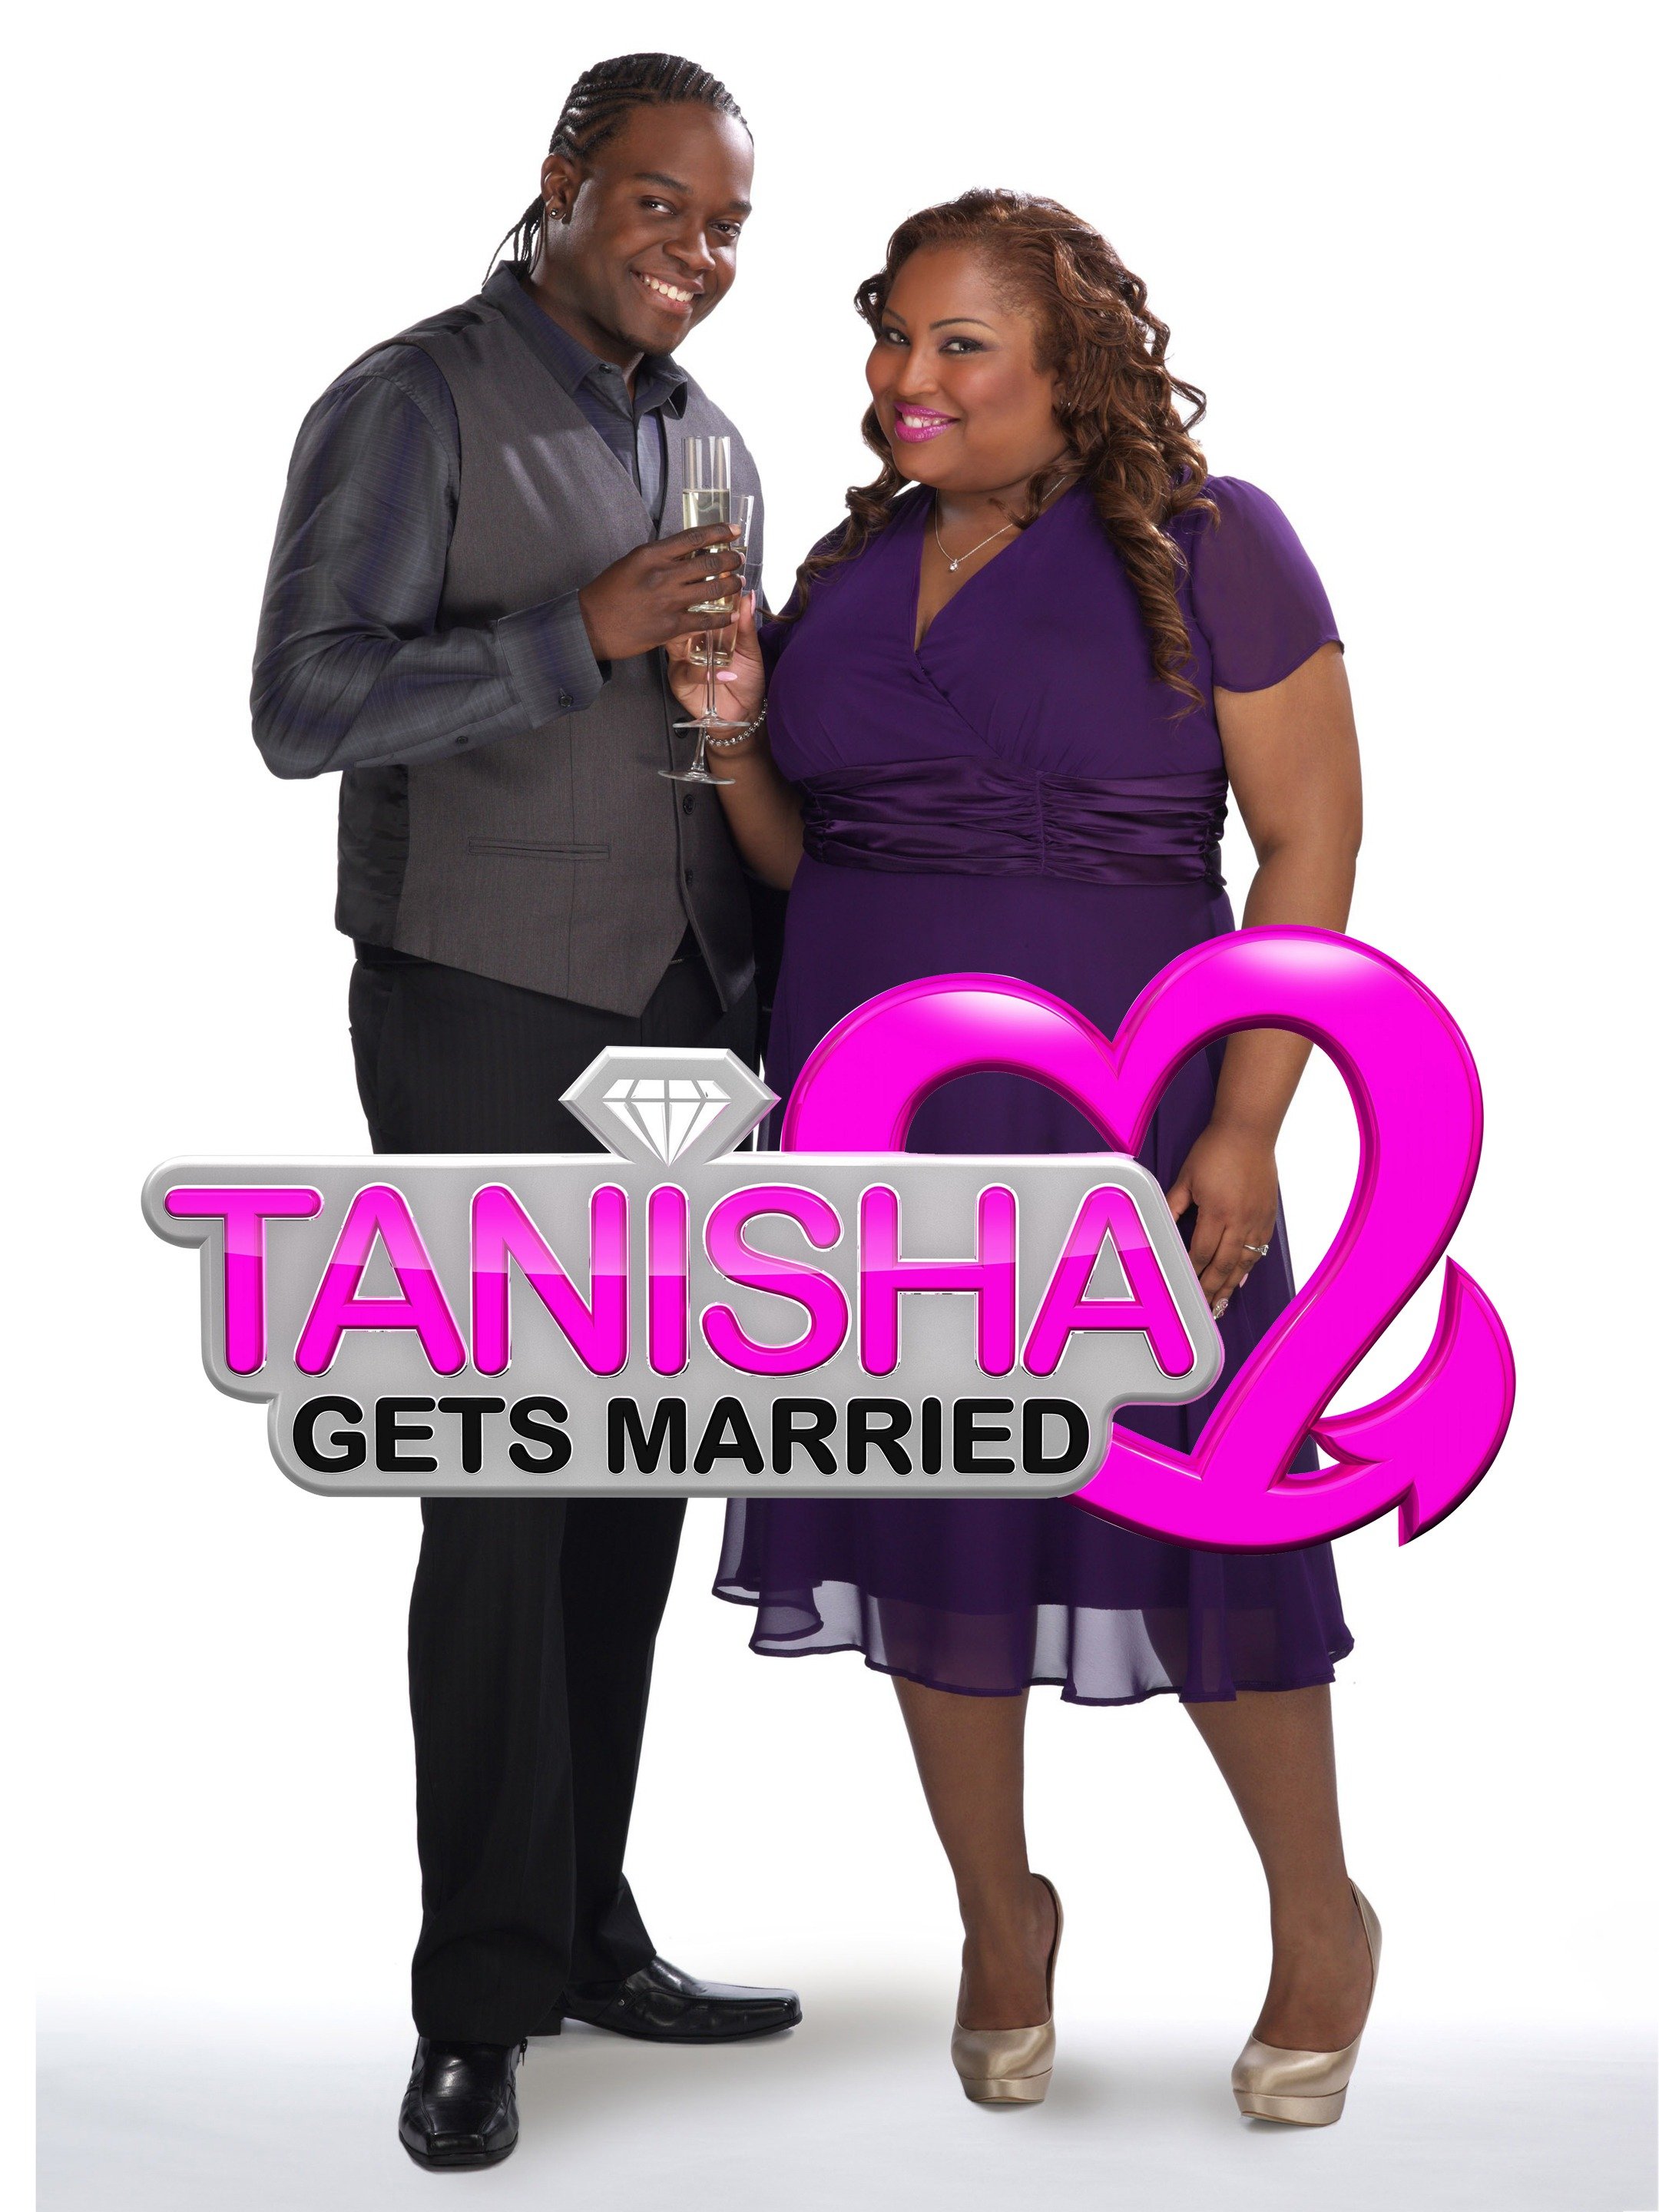 Tanisha wright married